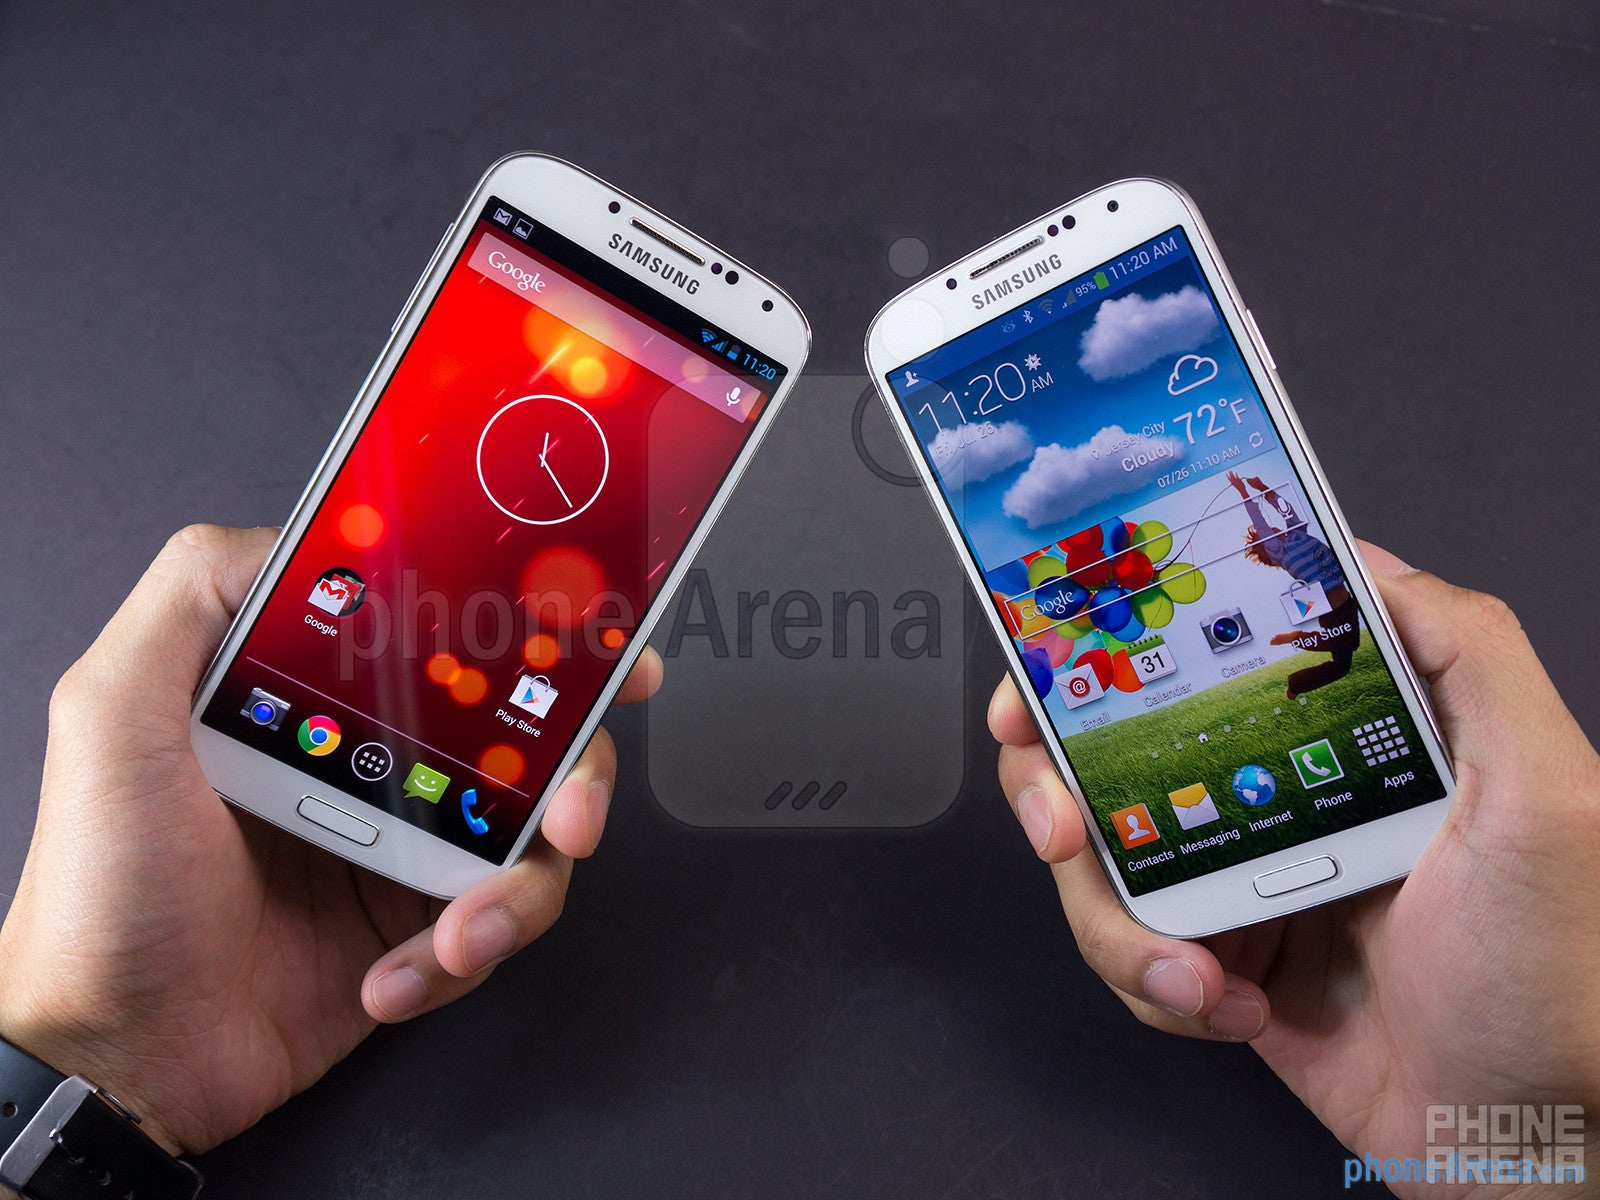 Samsung Galaxy S4 Google Play Edition vs Samsung Galaxy S4